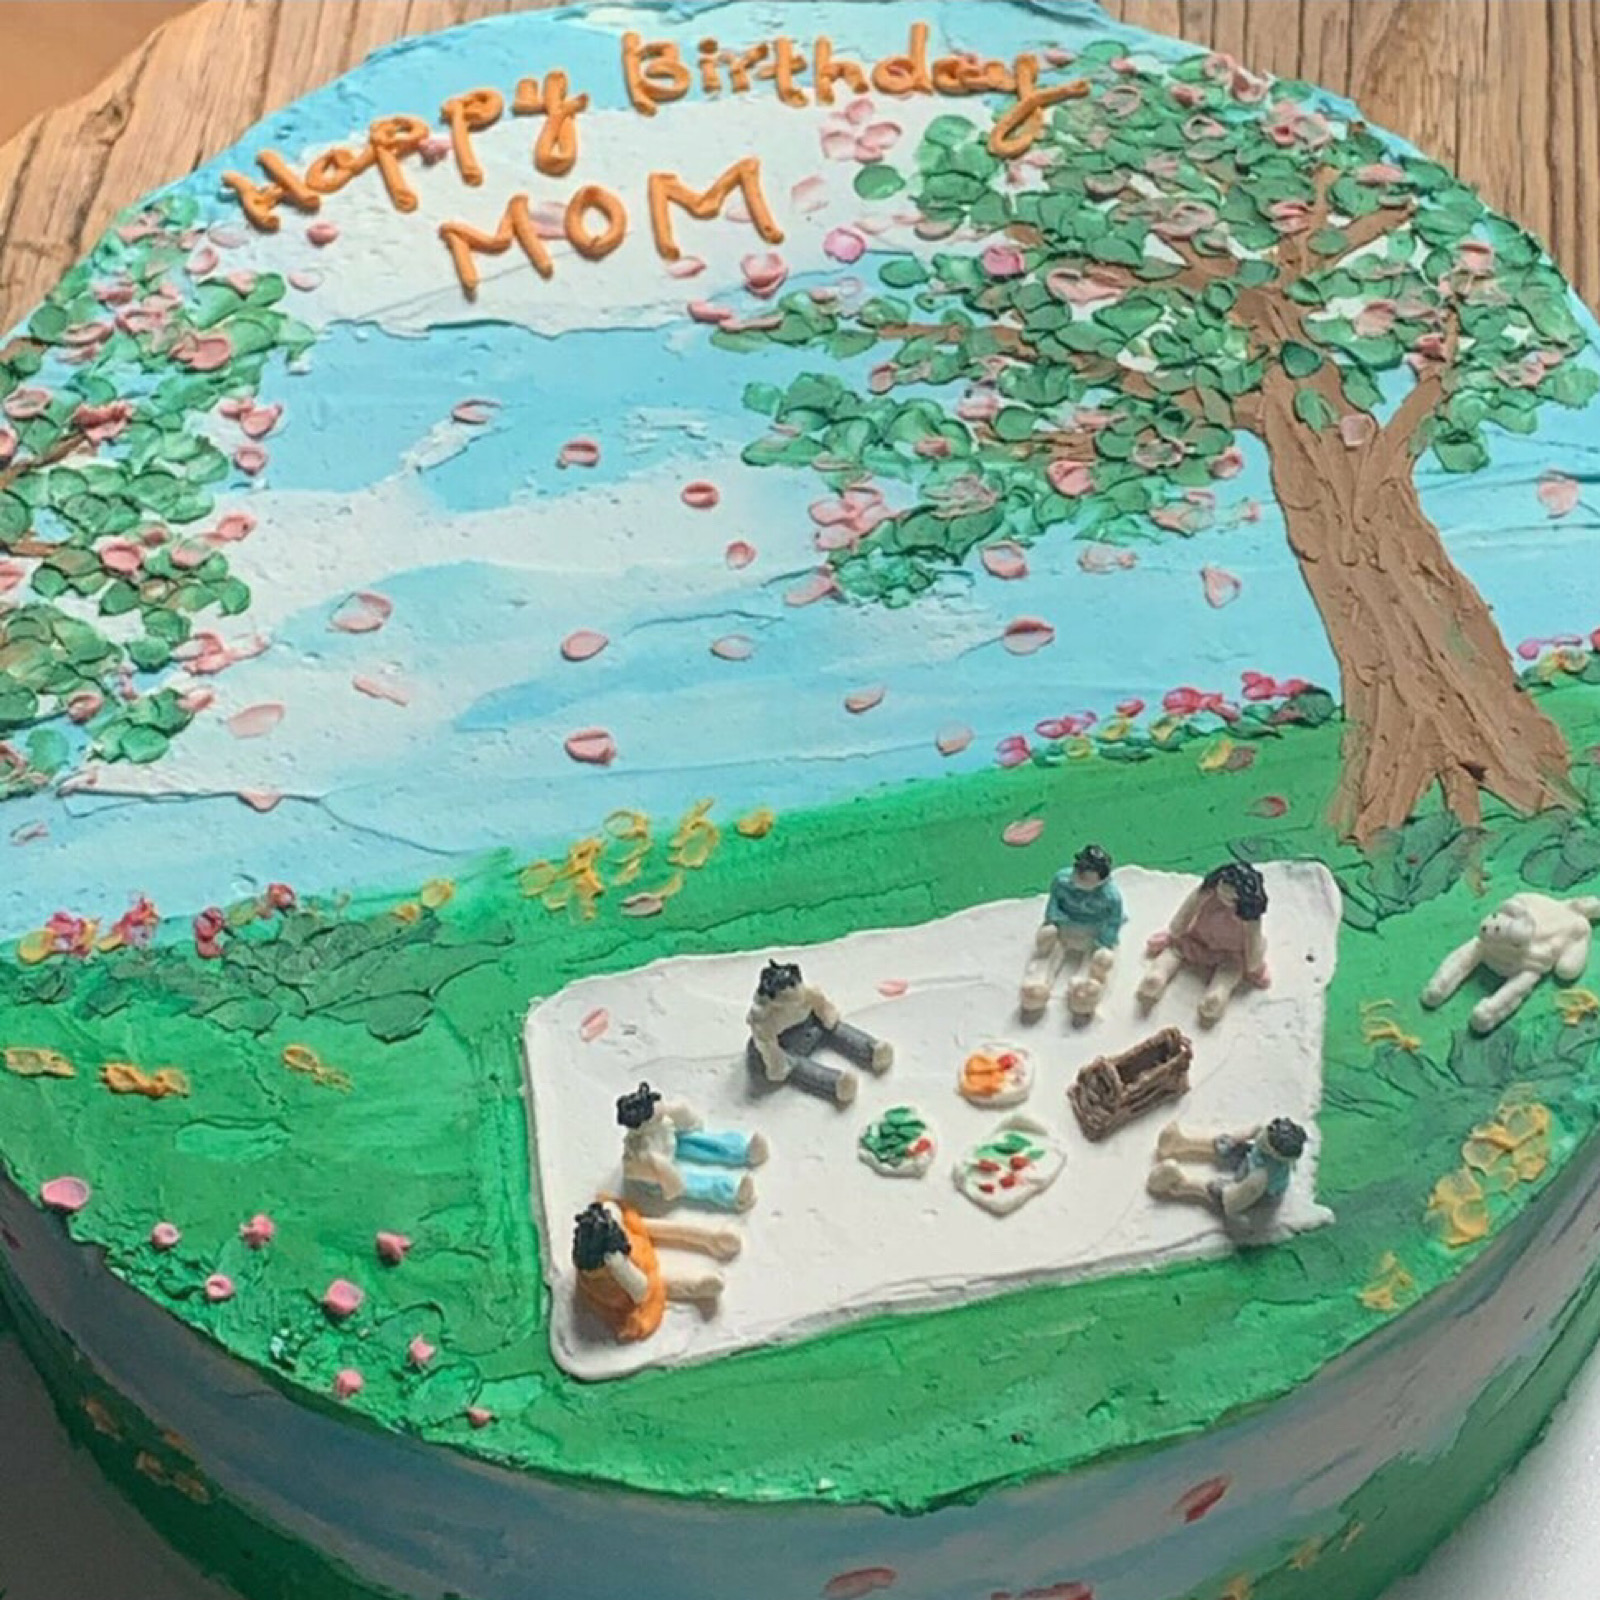 好看的蛋糕花朵 彩绘荷花蛋糕是画出来的吗